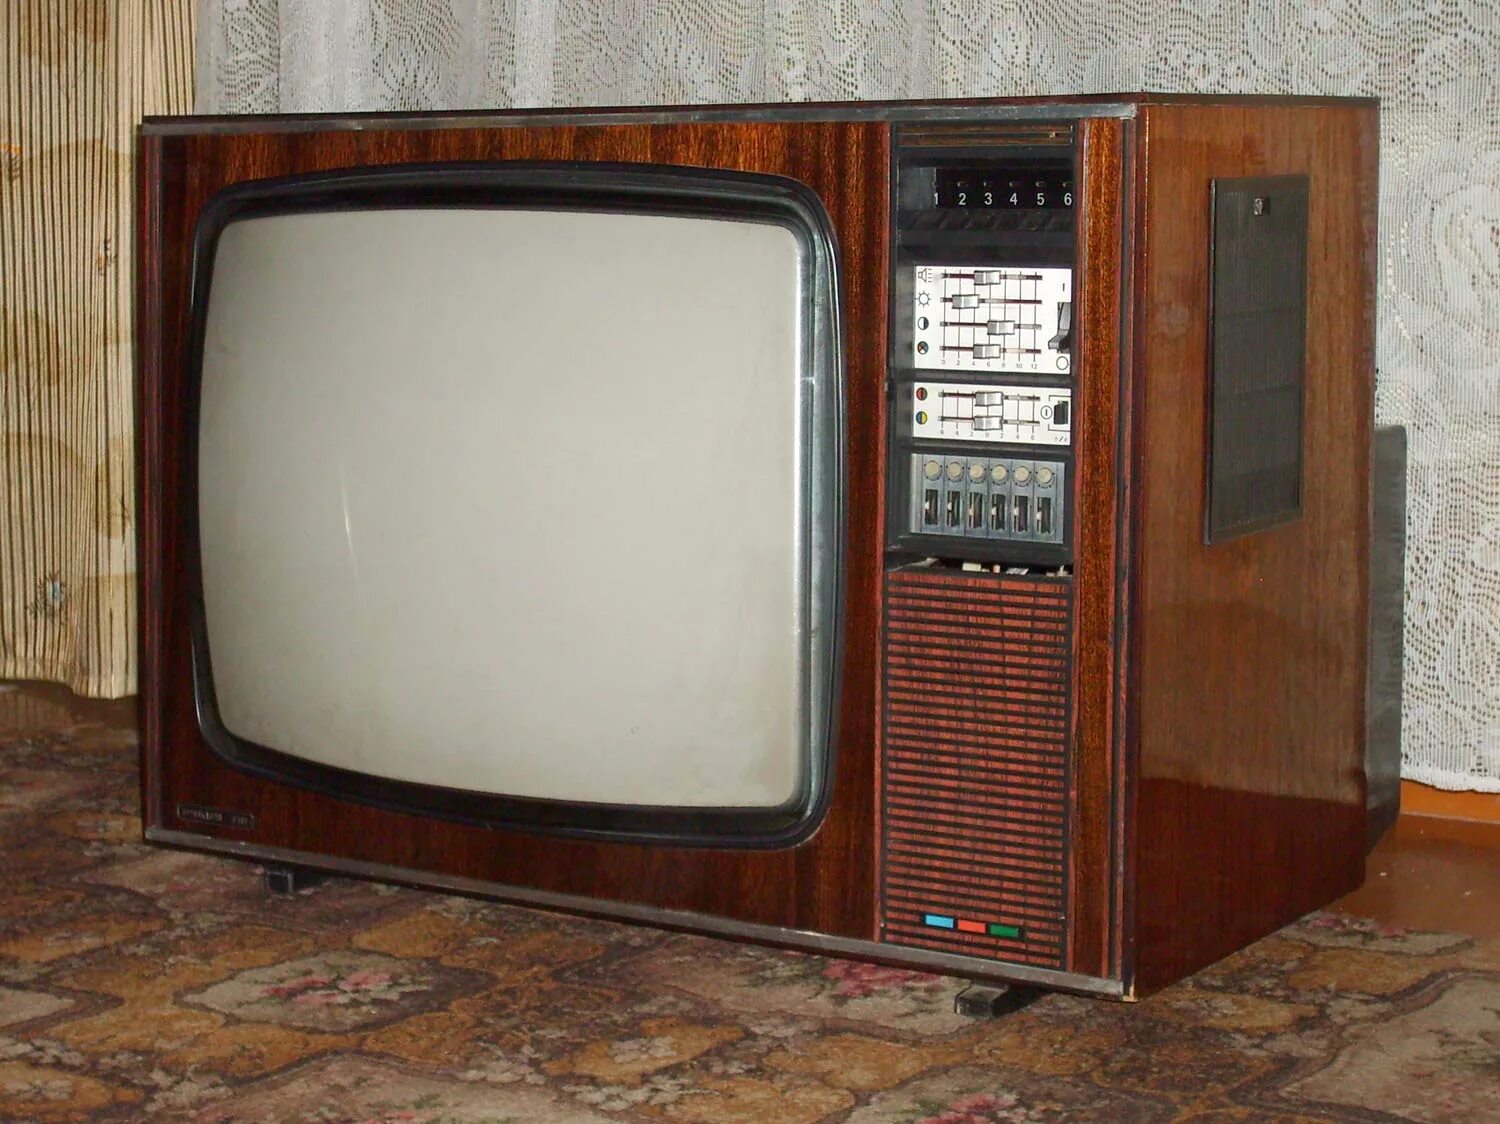 Куплю ламповый телевизор. Телевизор Рубин 718. Телевизор Рубин 714. Цветной телевизор электрон 718. Телевизор Рубин СССР цветной.